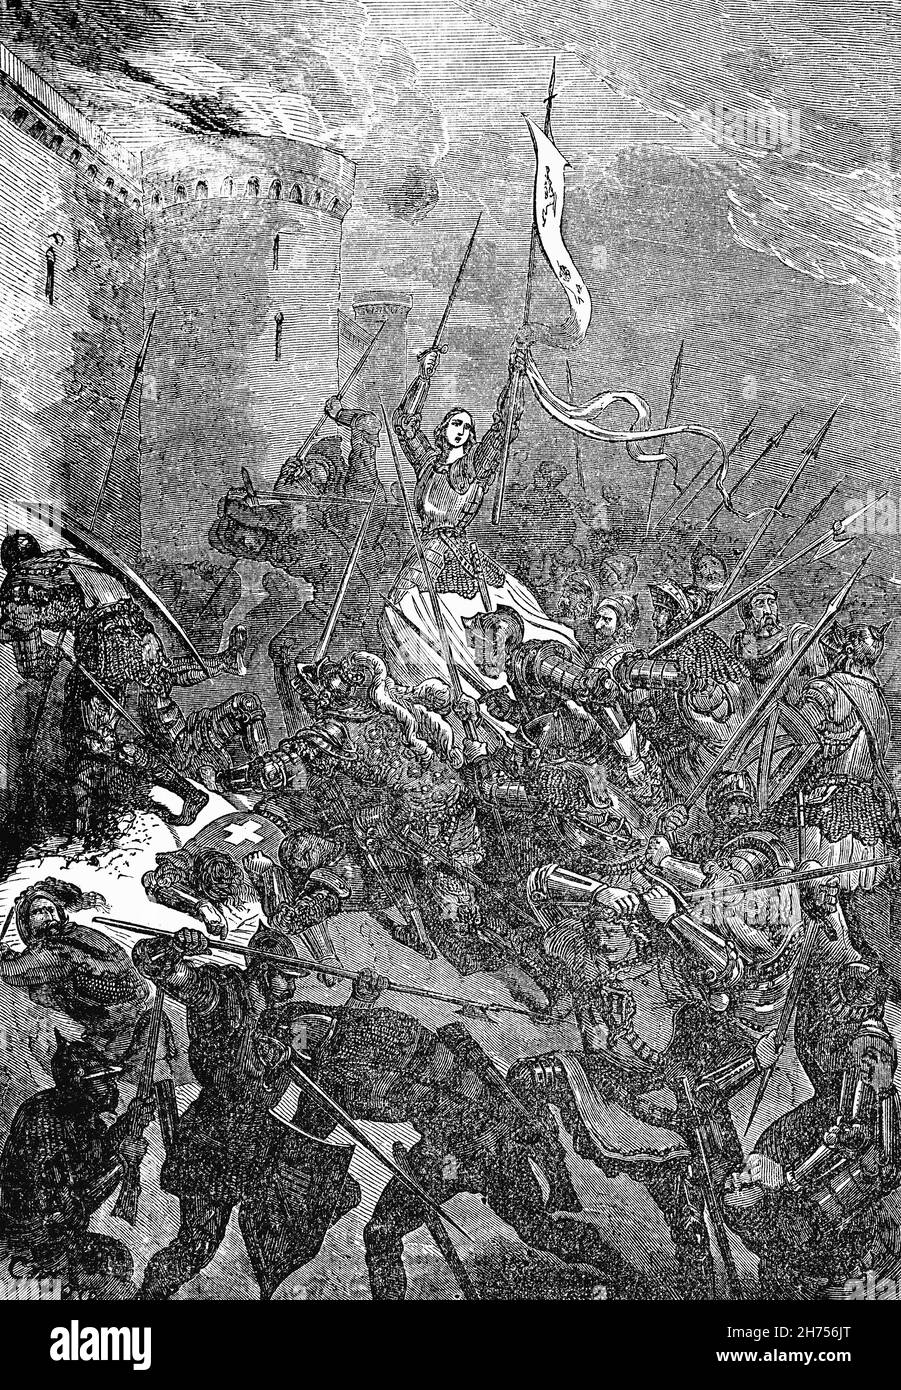 Eine Illustration von Jeanne d'Arc (1412-1431) aus dem späten 19th. Jahrhundert, alias „die Jungfrau von Orléans“, der französischen Heldin für ihre Rolle während des Hundertjährigen Krieges, für die sie später als heilige heilig gesprochen wurde. Joan sagte, dass sie Visionen von Heiligen sah, die sie anwiesen, Karl VII. Zu unterstützen und Frankreich von der englischen Herrschaft zu befreien. Würde der französische König Karl VII. Joan zur Belagerung von Orléans als Teil einer Hilfsarmee schicken, wonach die Belagerungsarmee nur neun Tage später aufgehoben wurde. Mehrere weitere schnelle Siege stärkte die französische Moral und ebneten den Weg für den endgültigen französischen Sieg in Castillon im Jahr 1453. Stockfoto